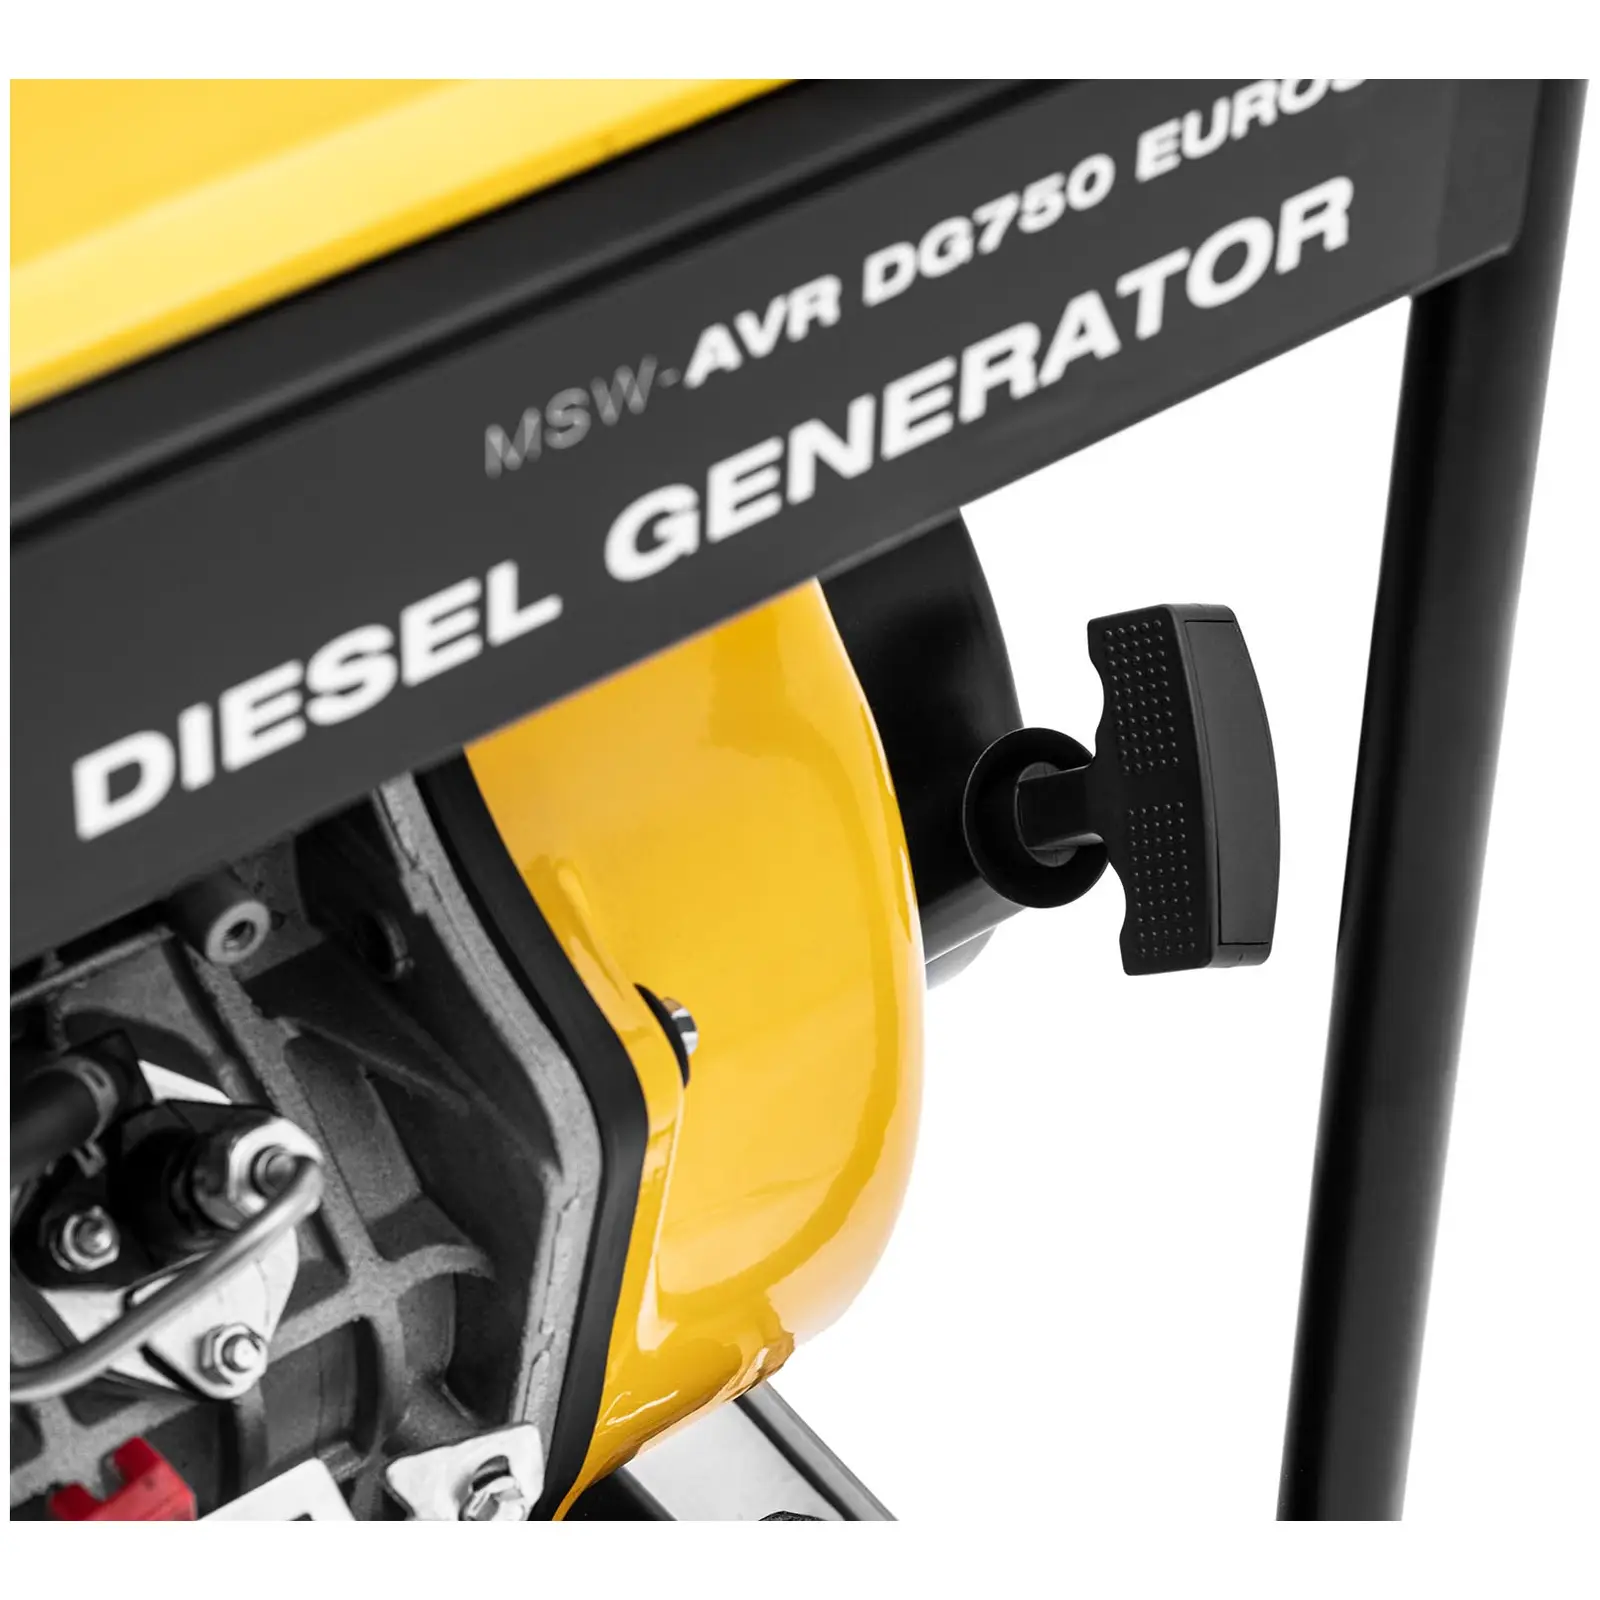 Diesel Generator - 1650 / 4600 W - 12.5 L - 230/400 V - mobile - AVR - Euro 5